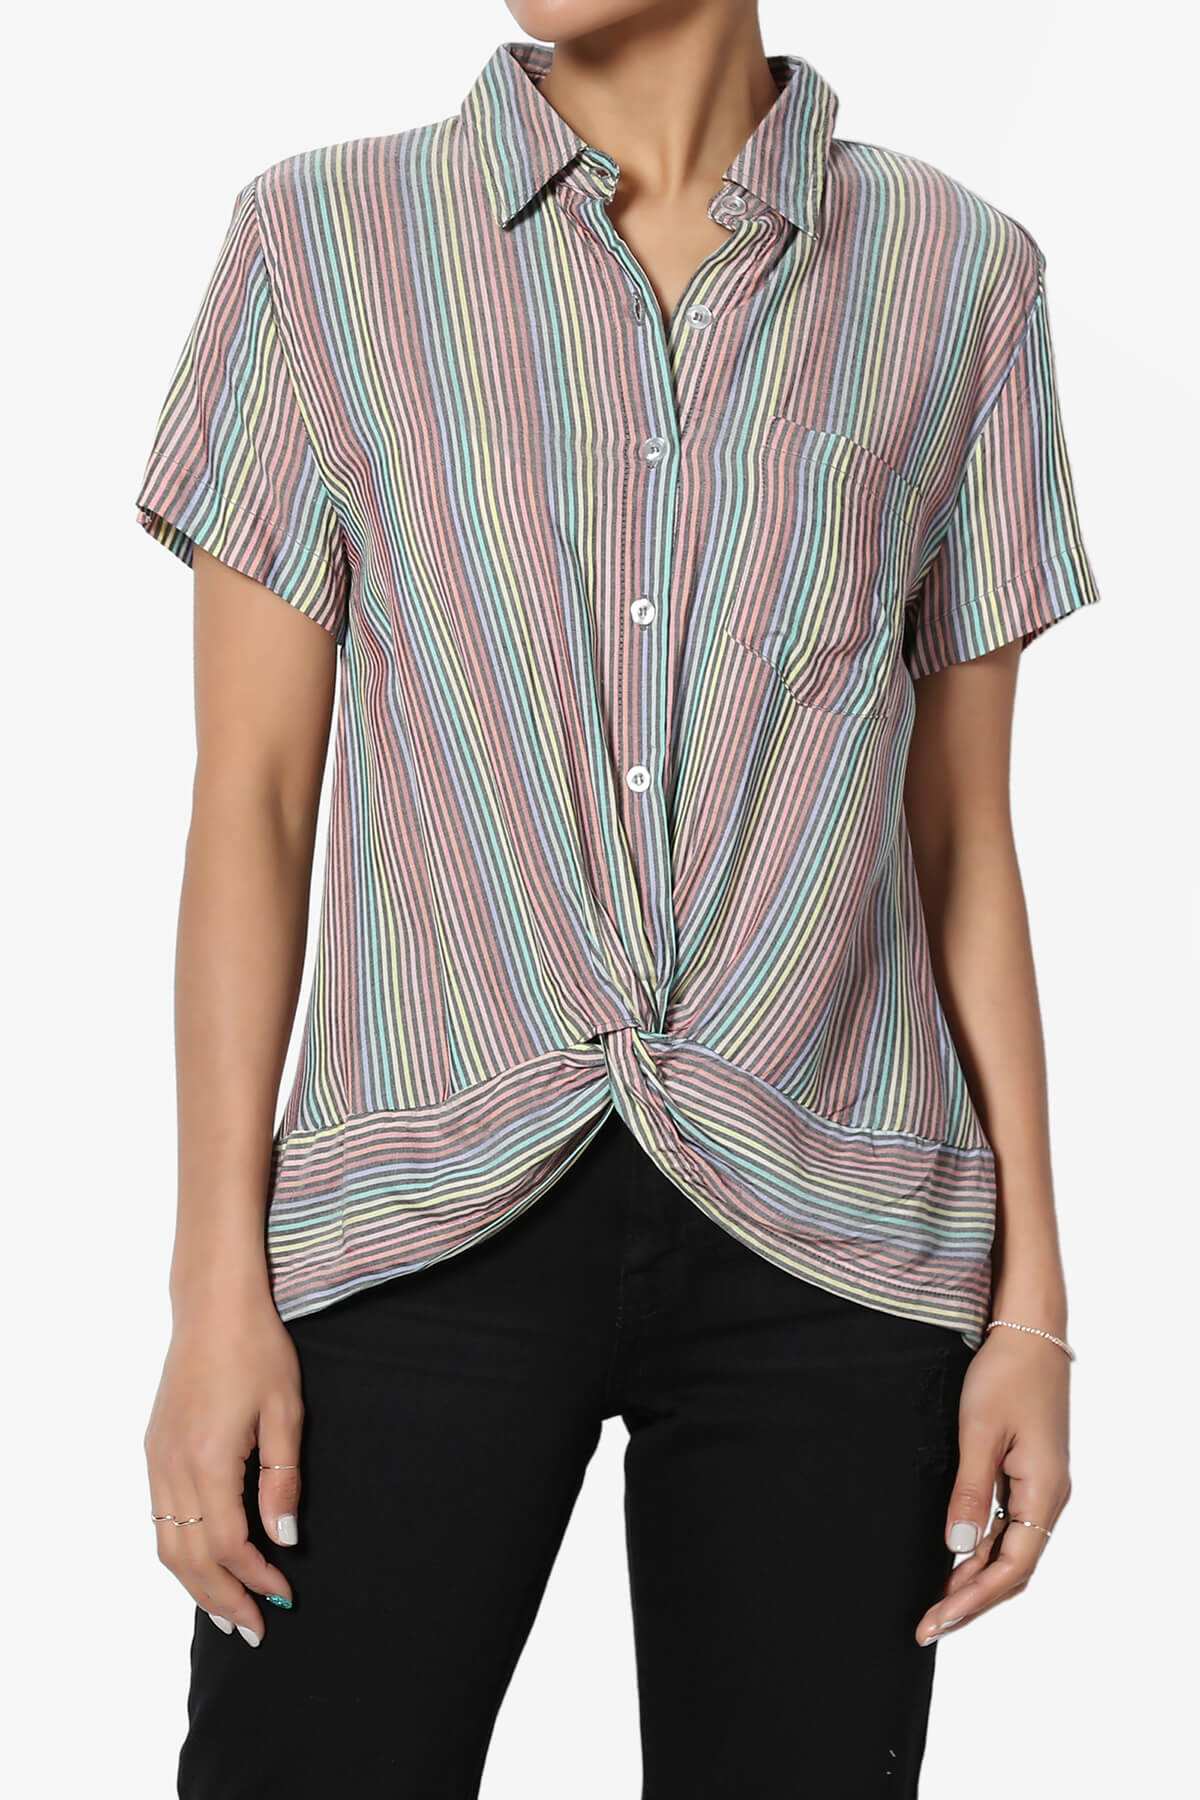 TheMogan S~3X Striped Twist Hem Button Up Shirt Short Sleeve Woven Crop Blouse